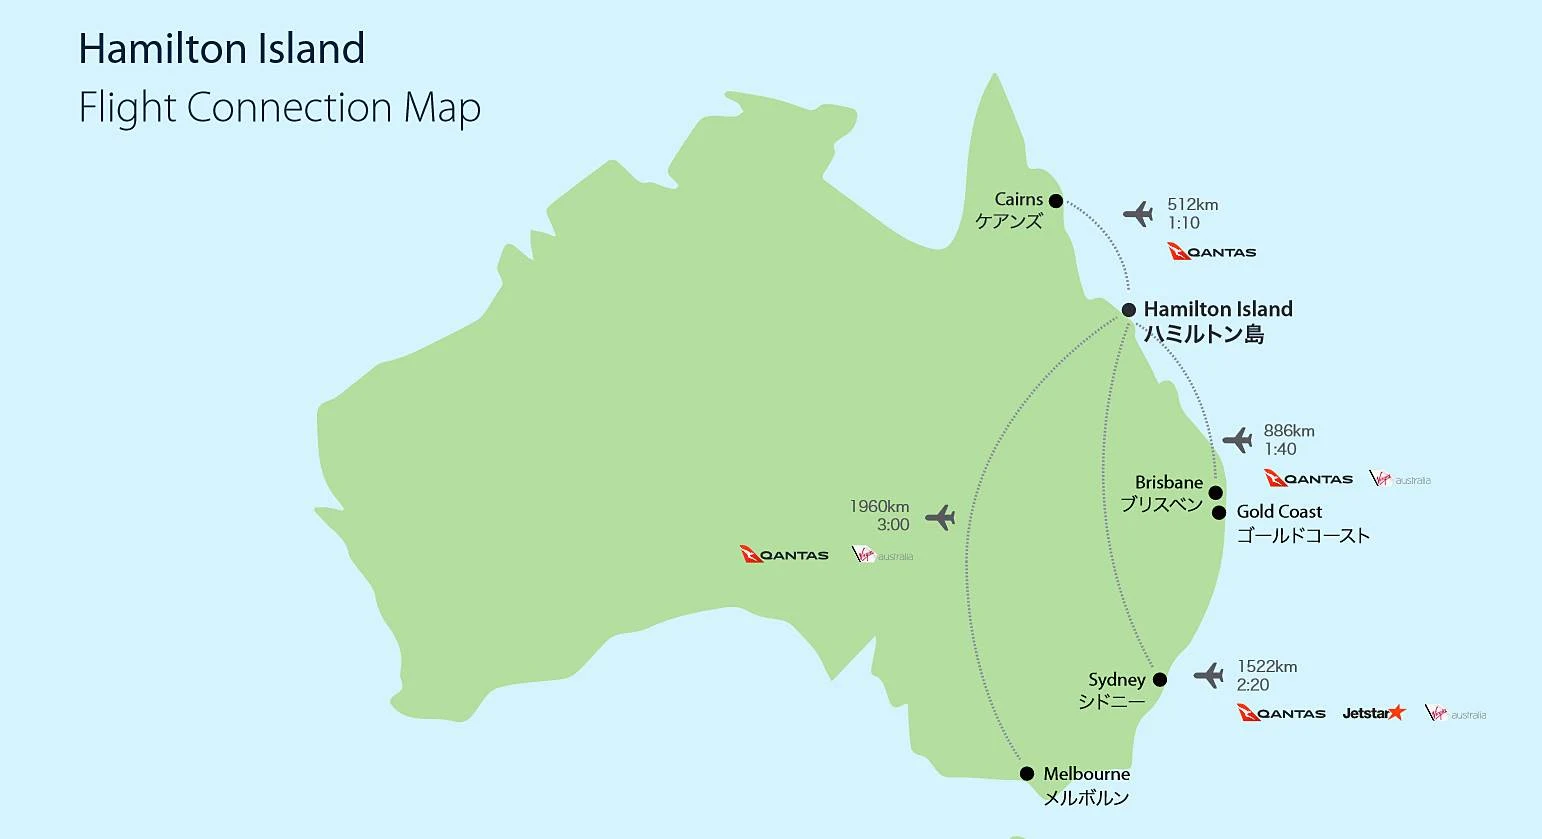 聖靈群島-漢密爾頓島-飛機-航線-國內線-景點-推薦-交通-遊記-自由行-行程-住宿-旅遊-度假-一日遊-澳洲-Hamilton-Island-Whitsundays